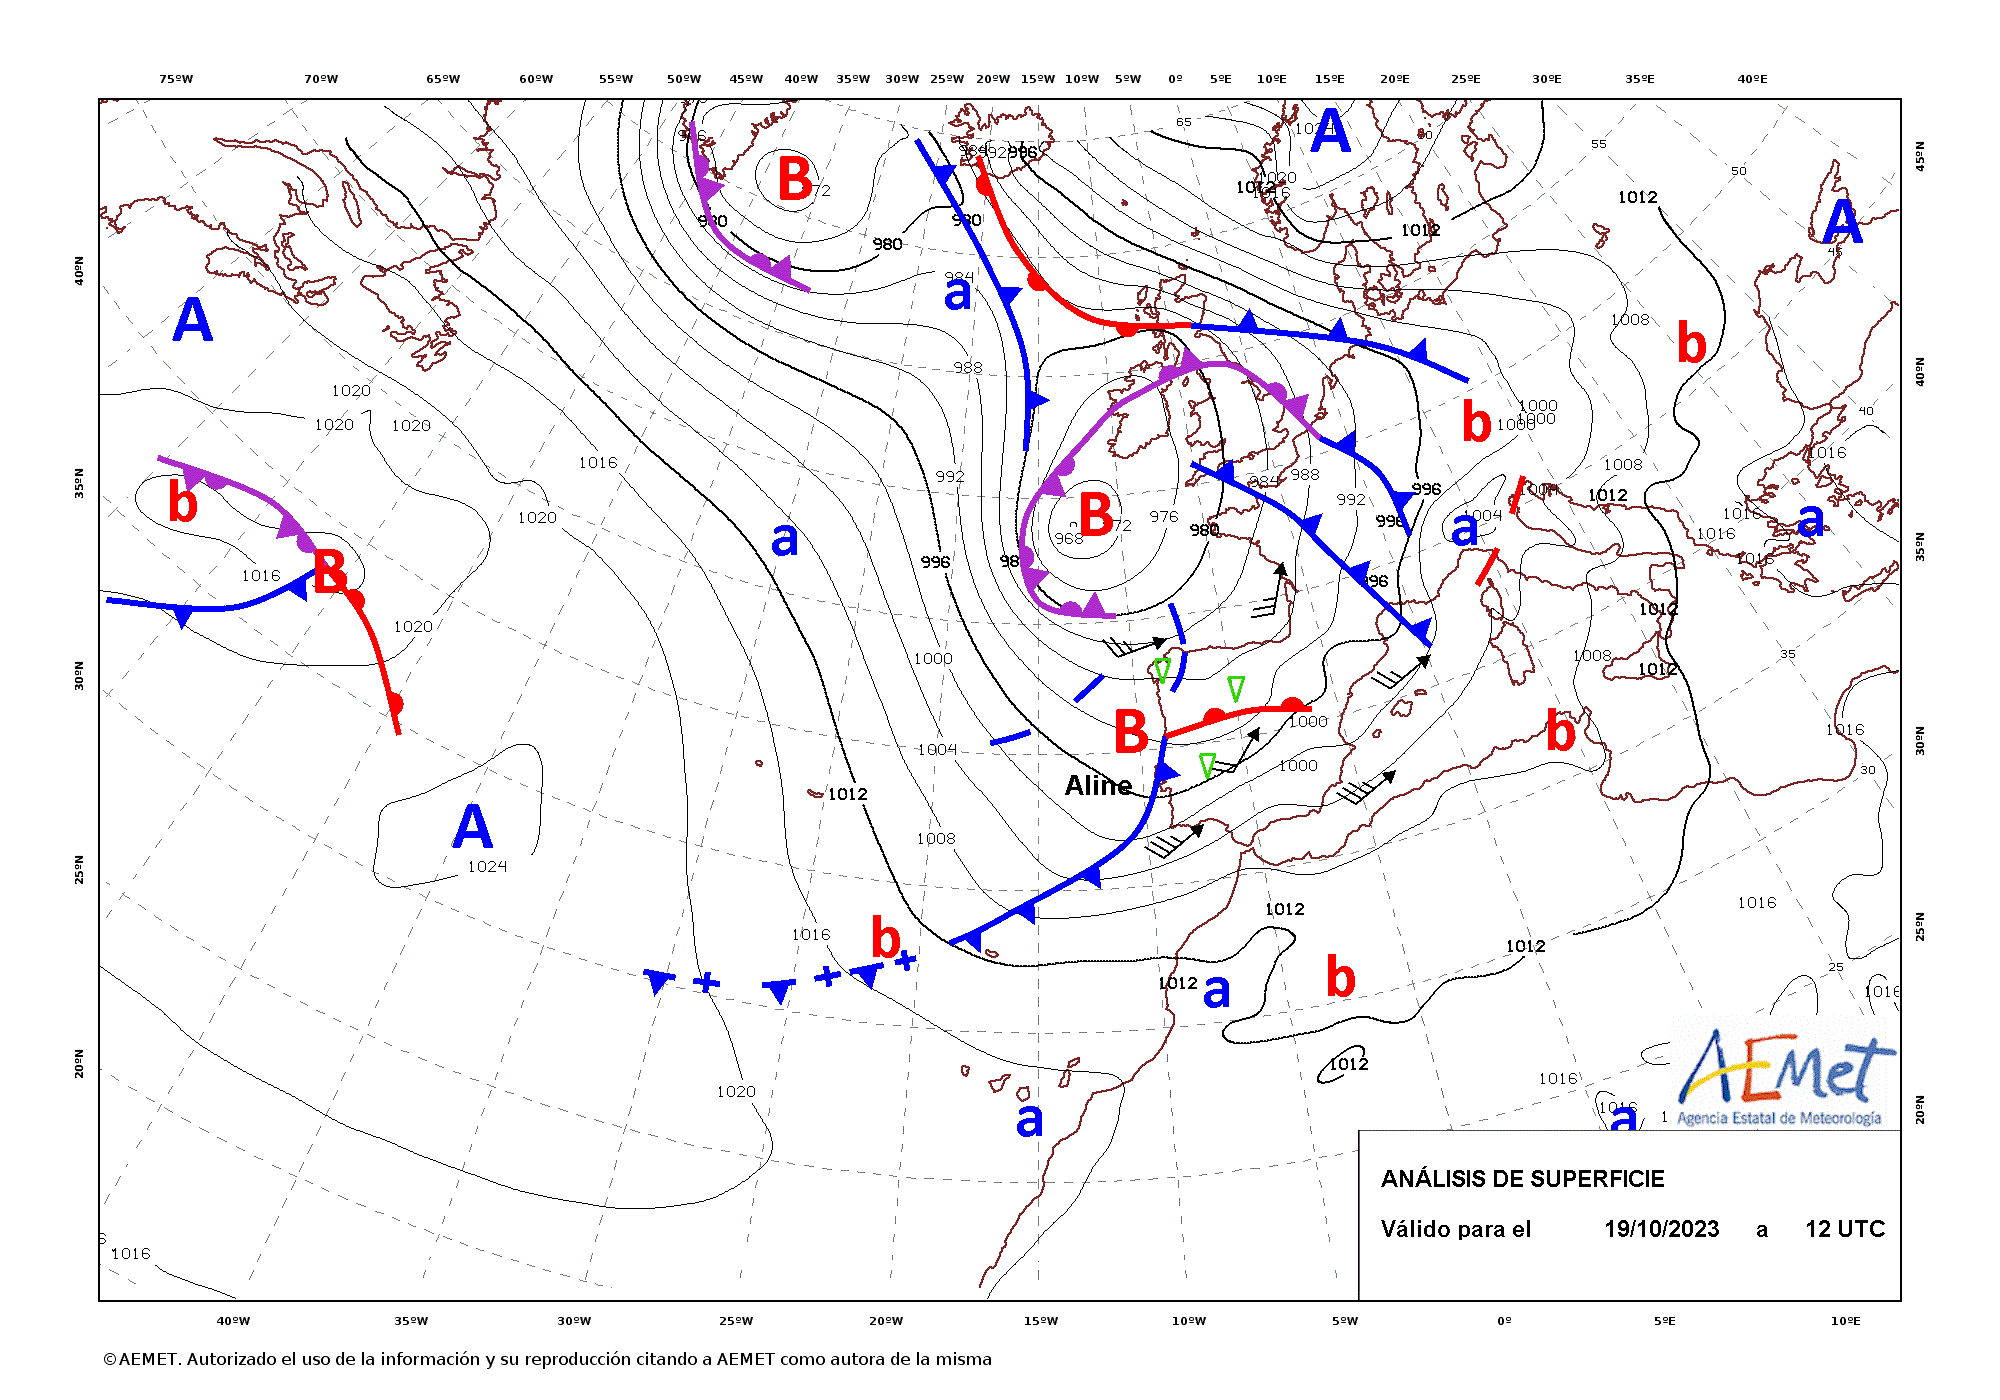 Análisis de superficie de las 12 UTC del 19 de octubre de 2023. La borrasca apareció nombrada por primera vez a las 12 UTC del día 19 cuando se localizaba muy próxima a la península ibérica.